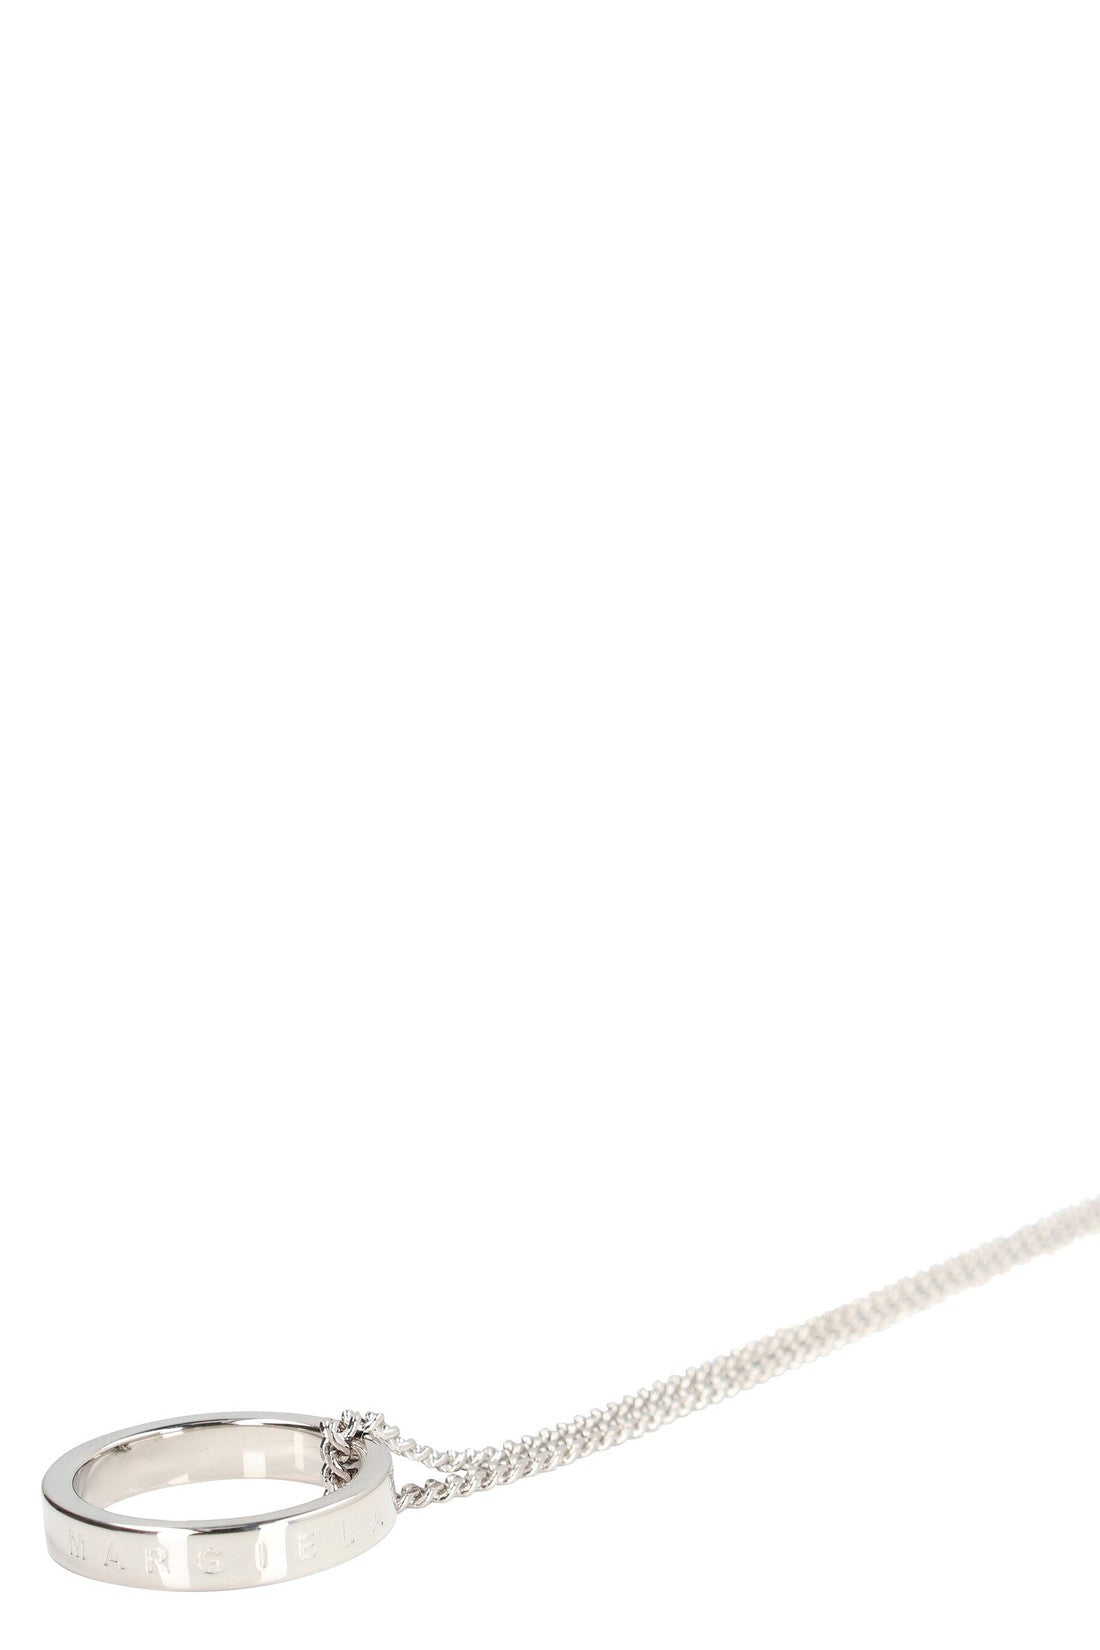 MM6 Maison Margiela-OUTLET-SALE-Necklace with pendant-ARCHIVIST